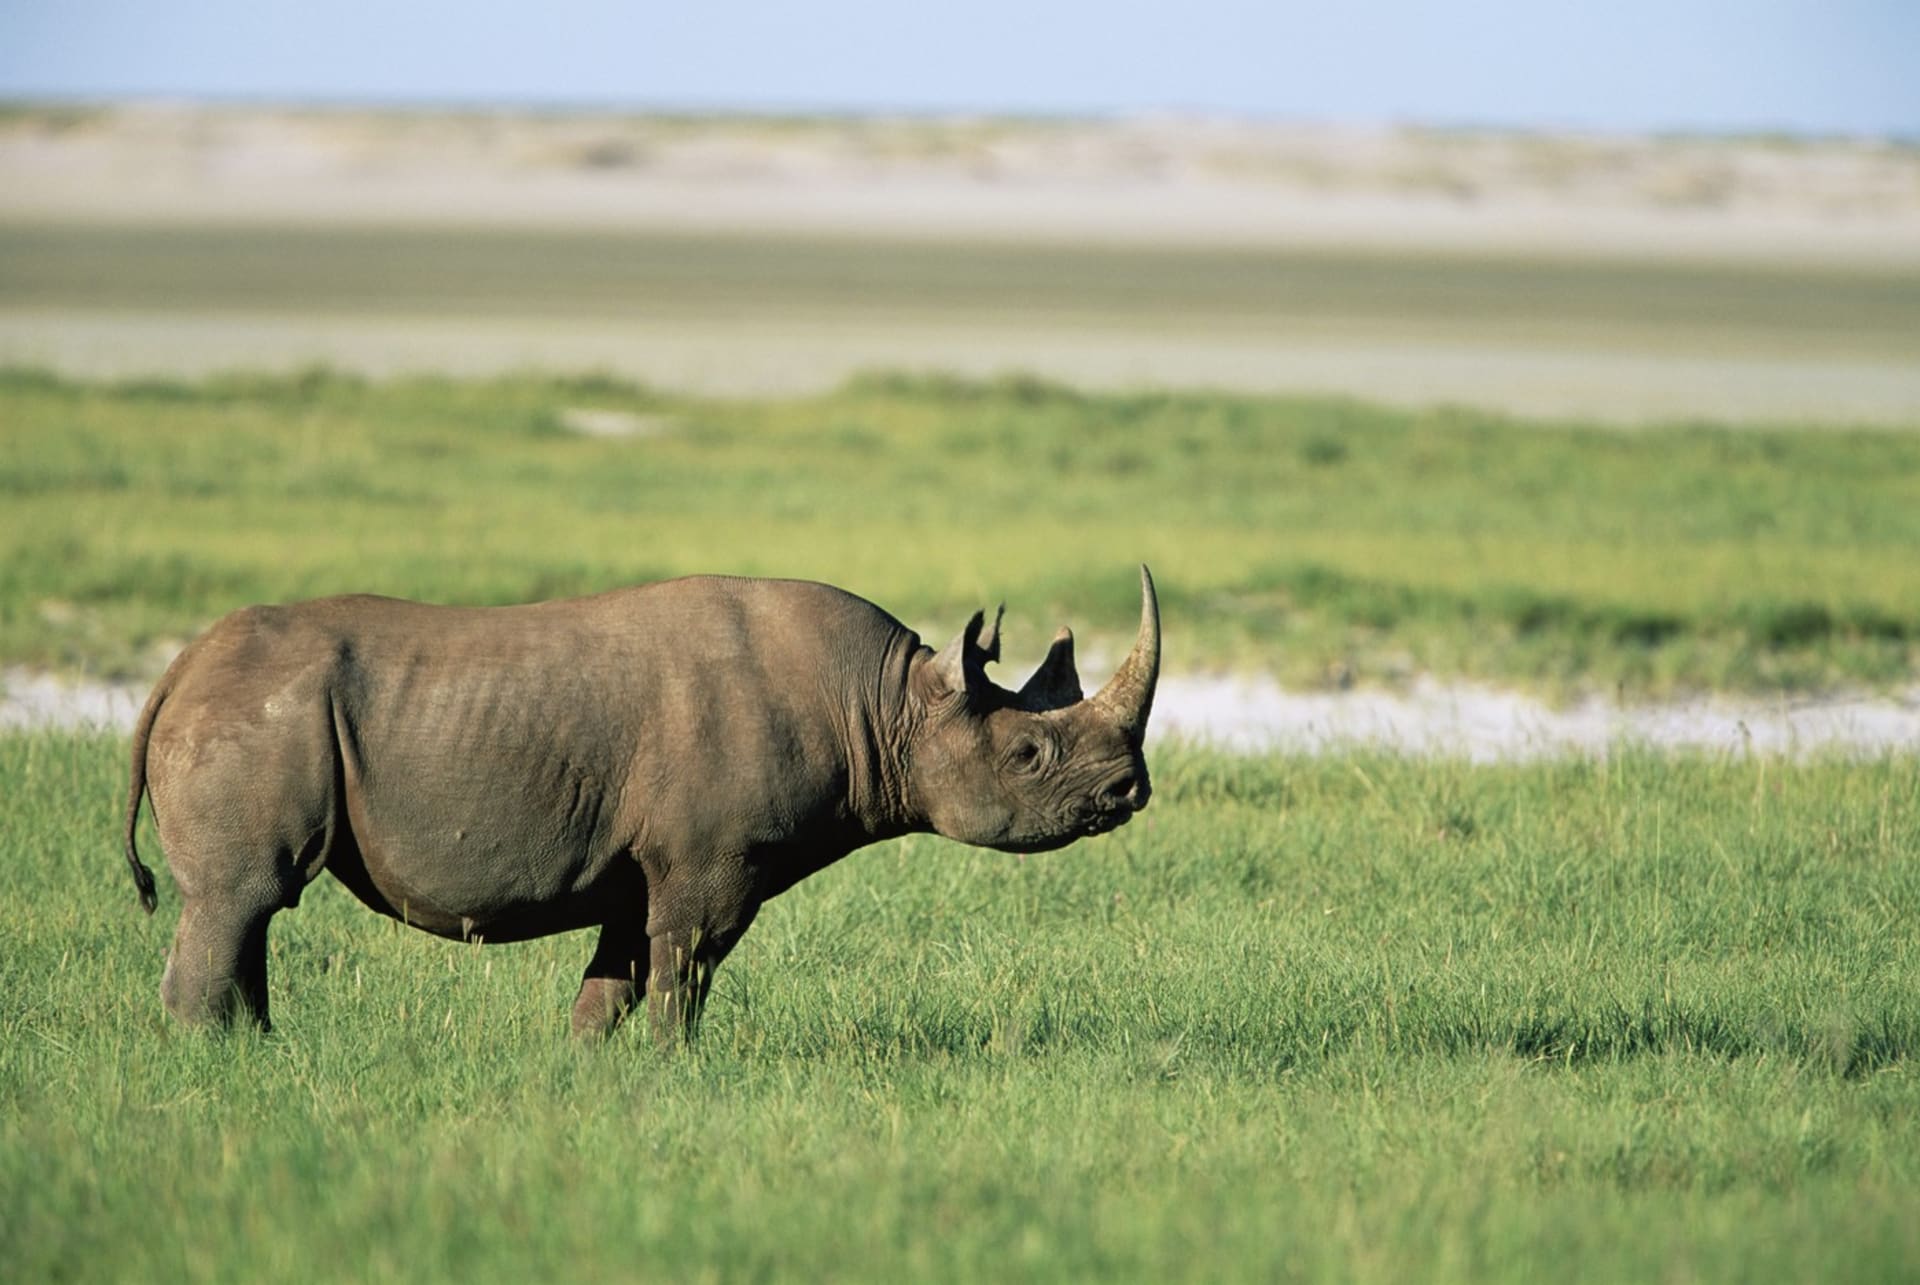 Nosorožce nejvíce ohrožuje člověk